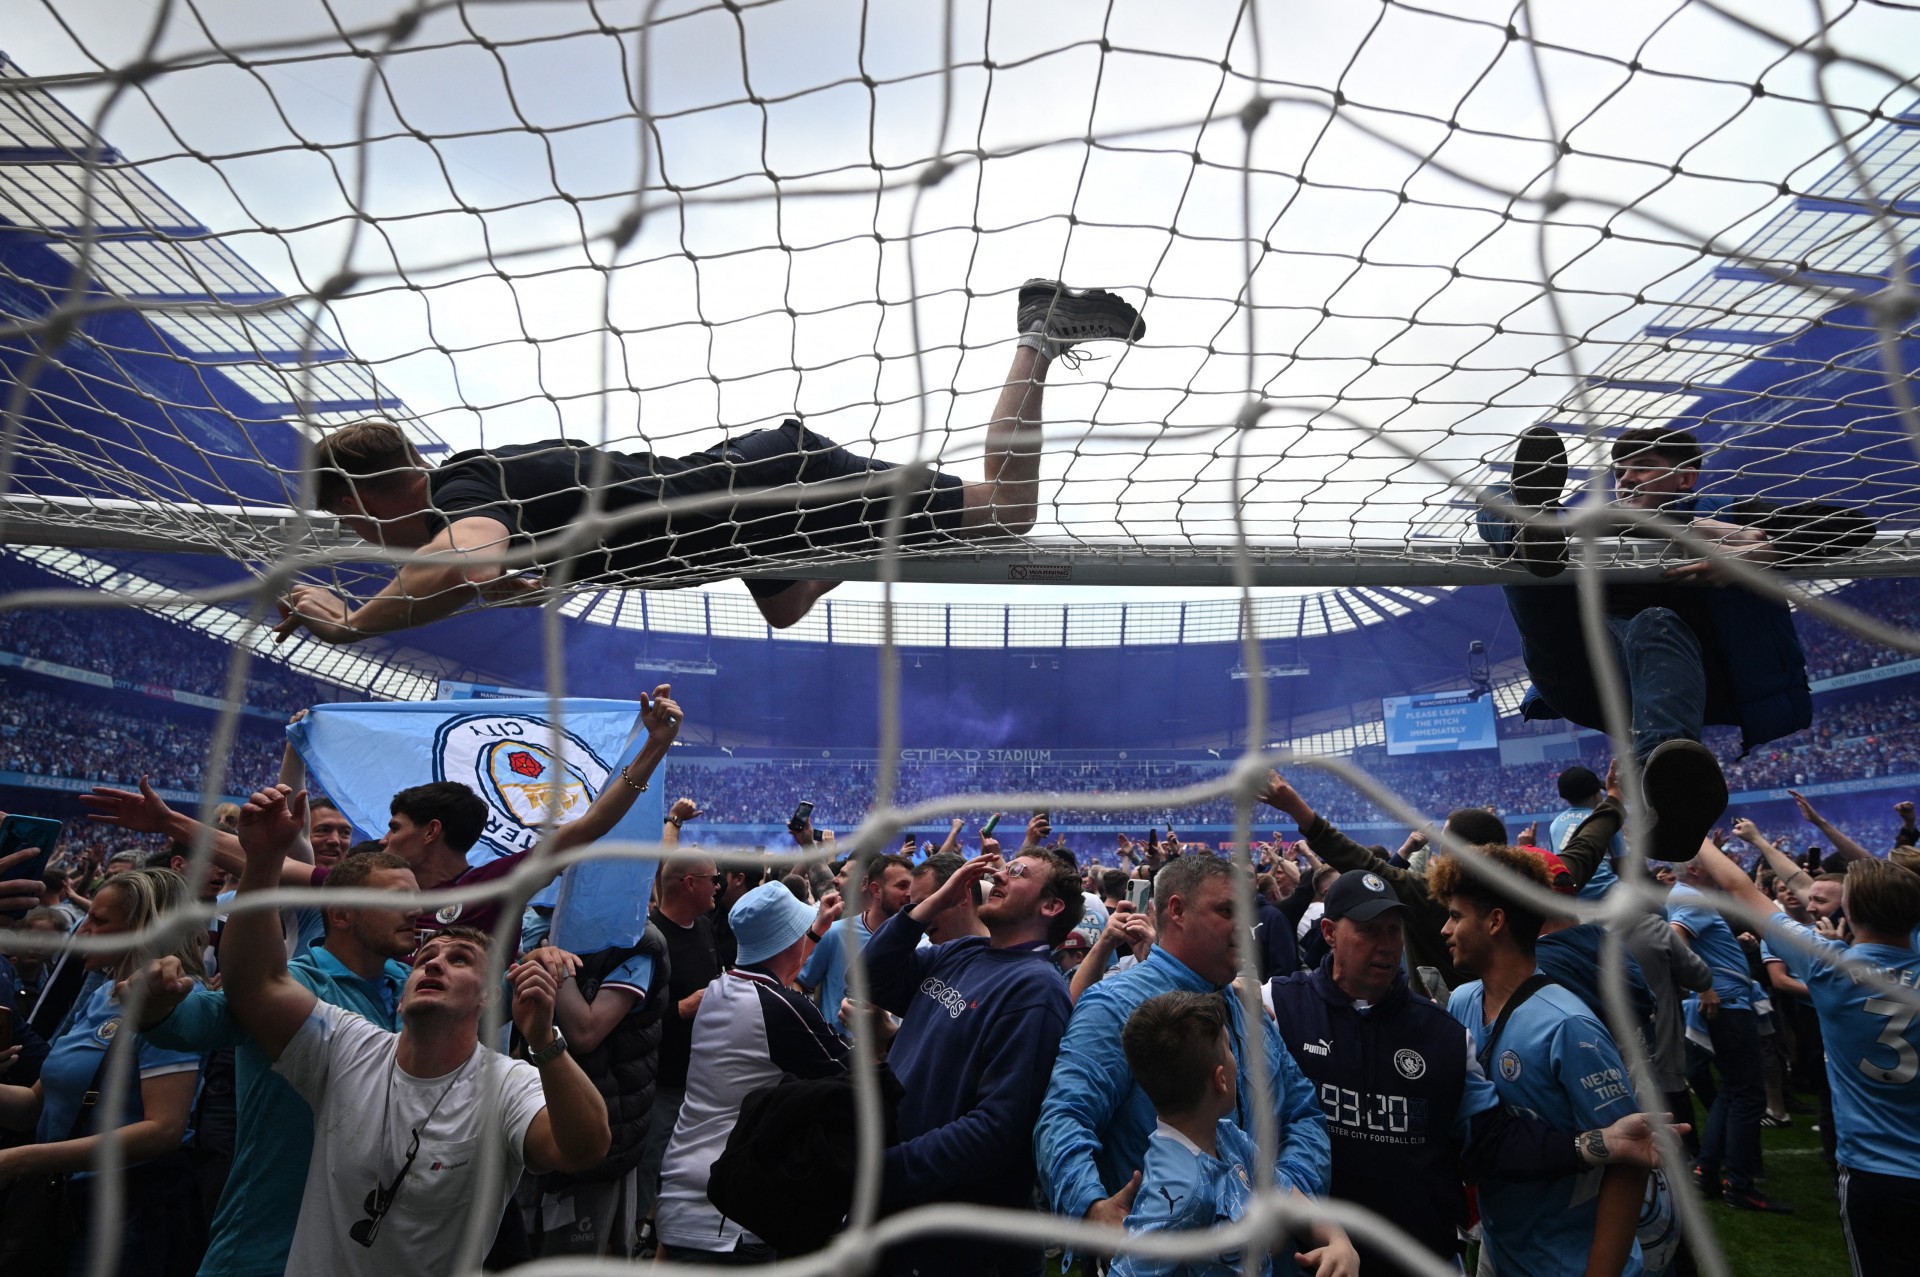 Torcida do Manchester City comemora o título da Premier League - OLI SCARFF / AFP